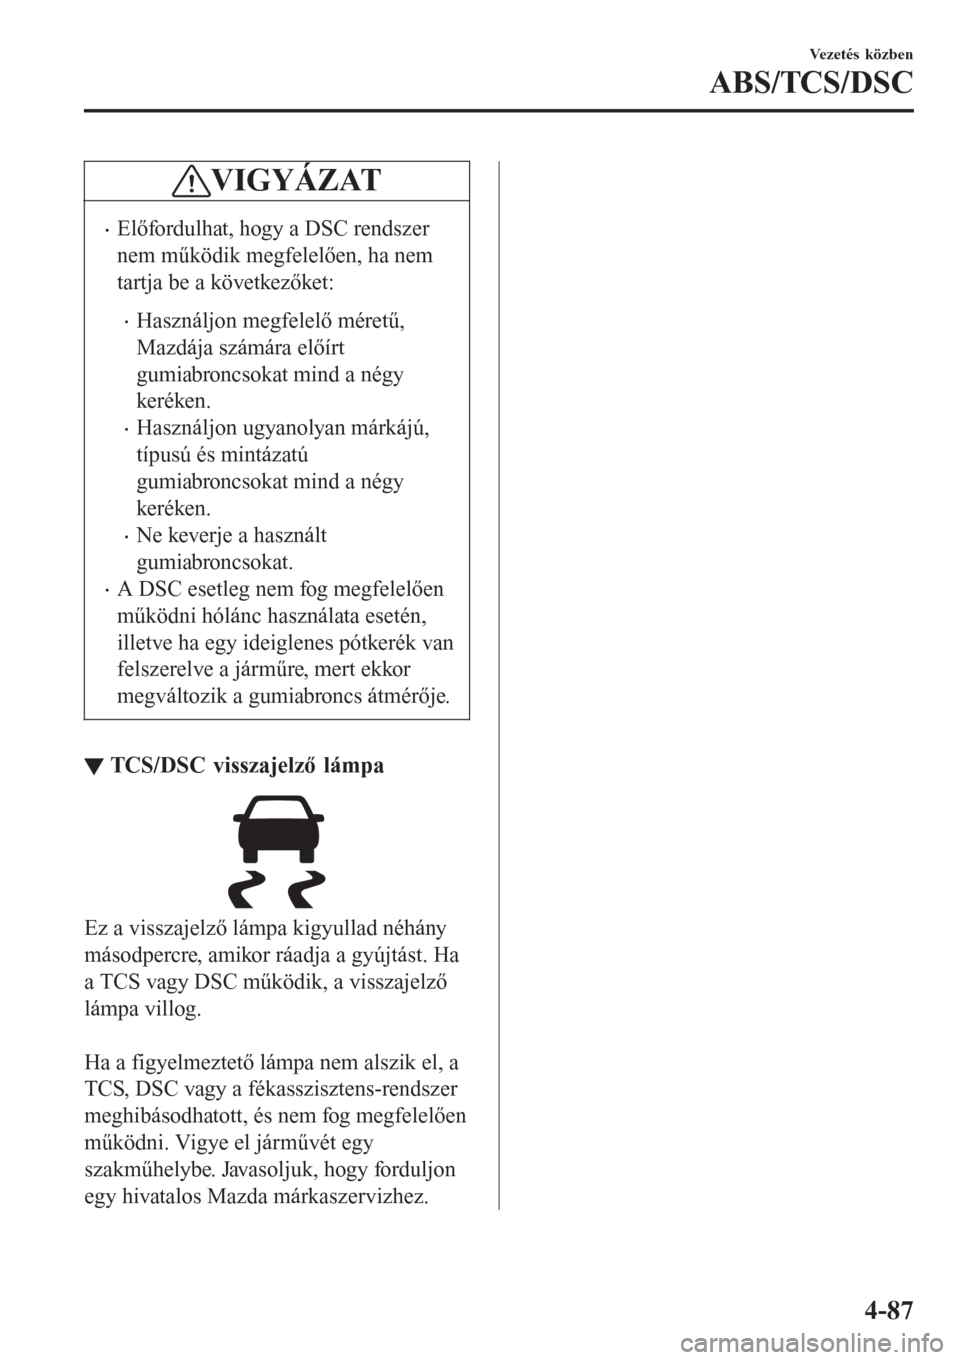 MAZDA MODEL CX-3 2016  Kezelési útmutató (in Hungarian) VIGYÁZAT
•Előfordulhat, hogy a DSC rendszer
nem működik megfelelően, ha nem
tartja be a következőket:
•Használjon megfelelő méretű,
Mazdája számára előírt
gumiabroncsokat mind a n�